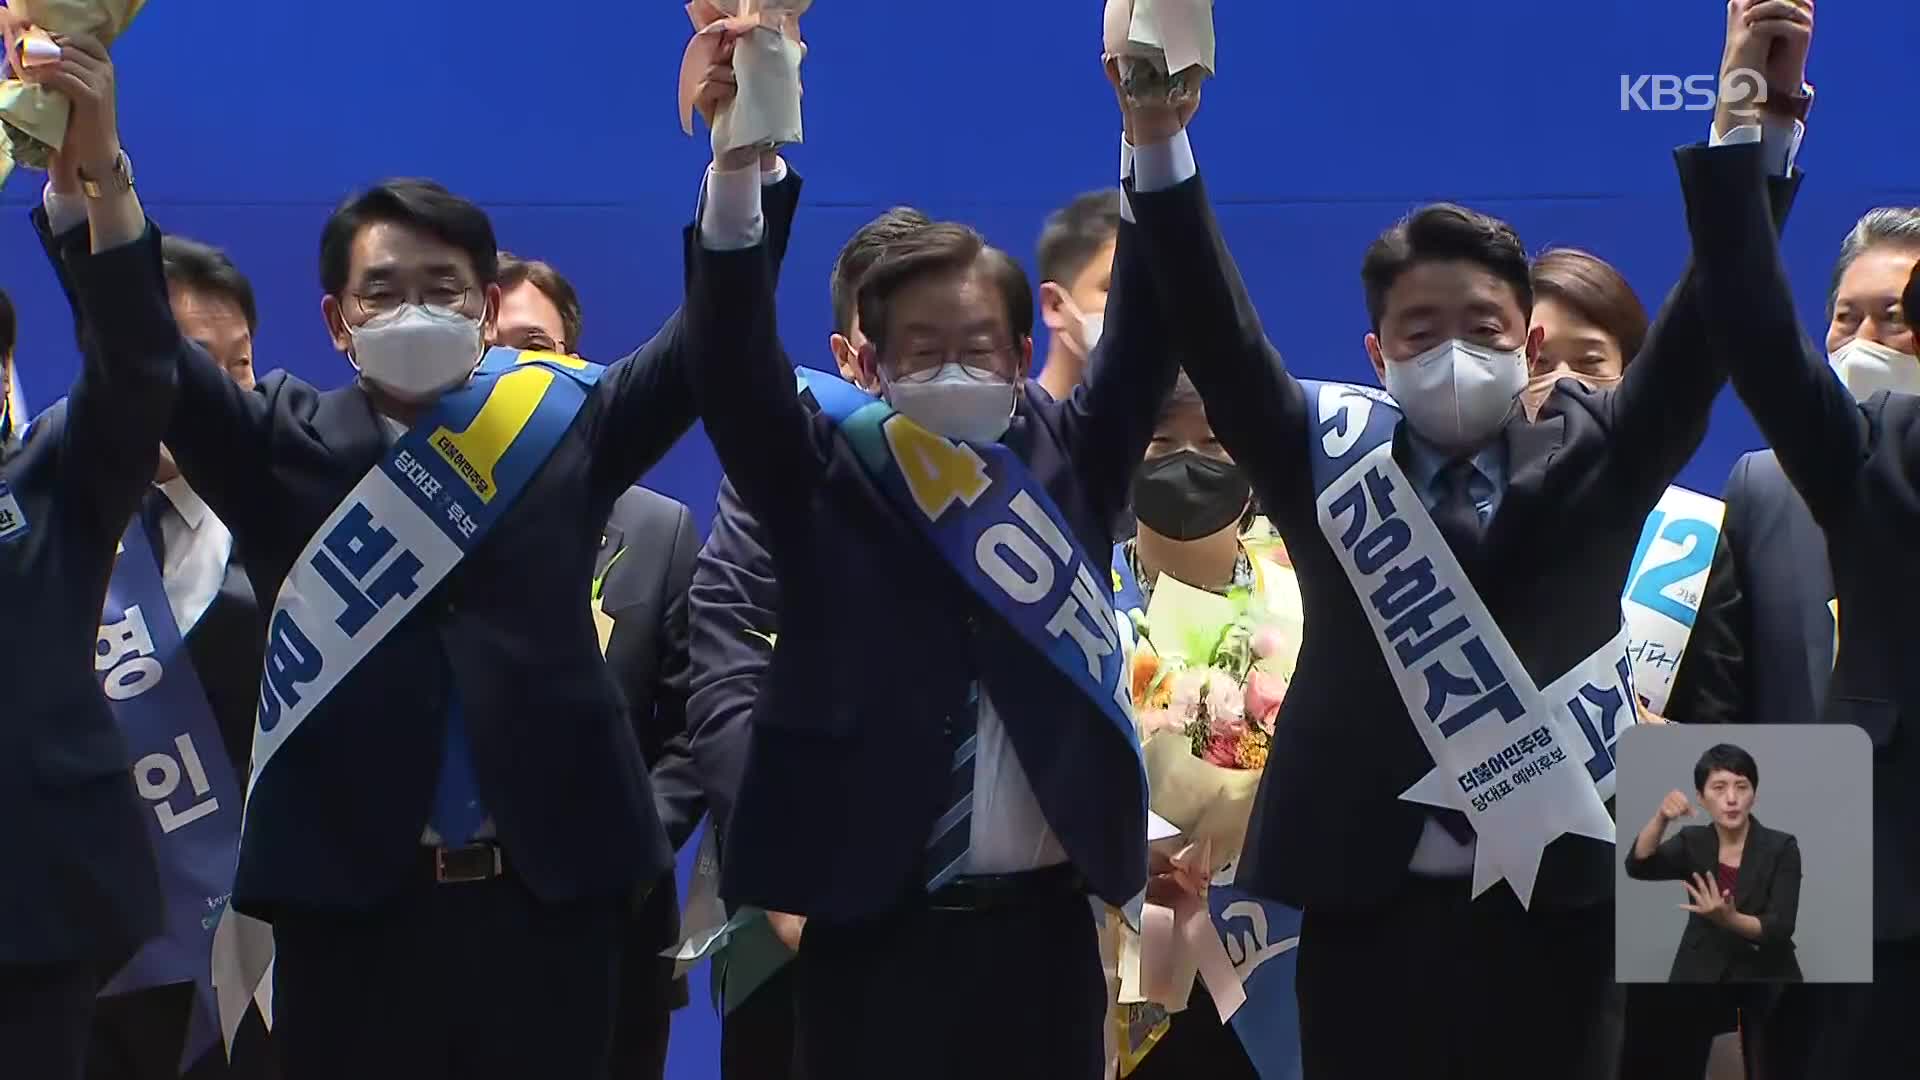 민주당 당대표 선거, 박용진·이재명·강훈식 3파전